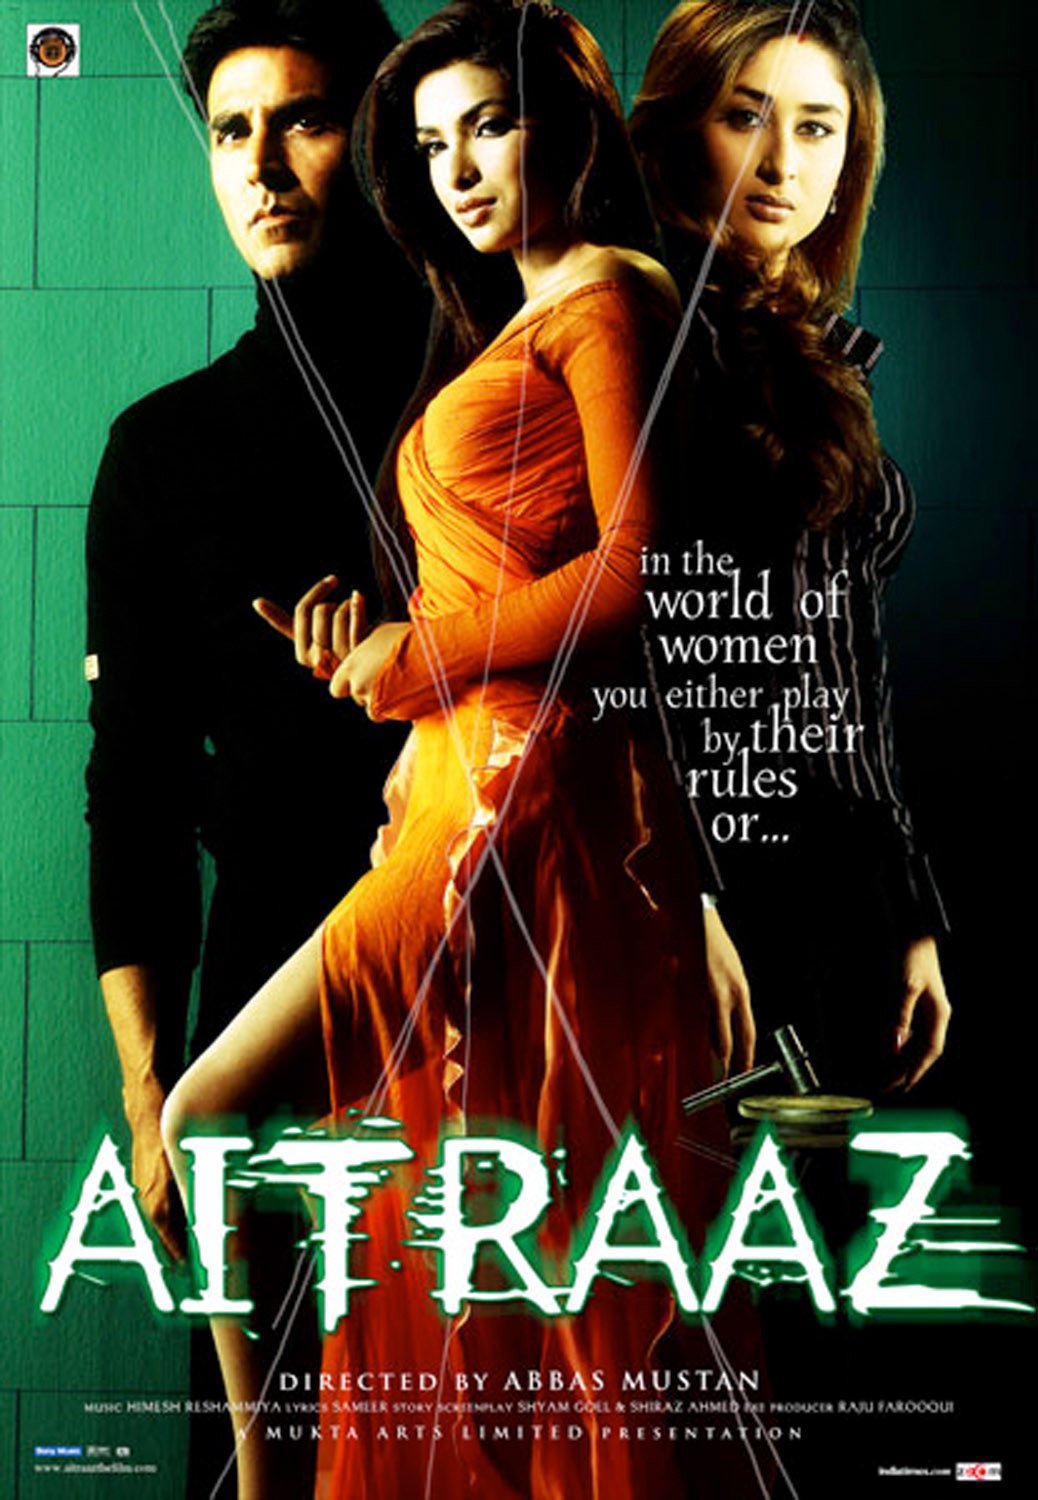 Hindi poster of the movie Aitraaz